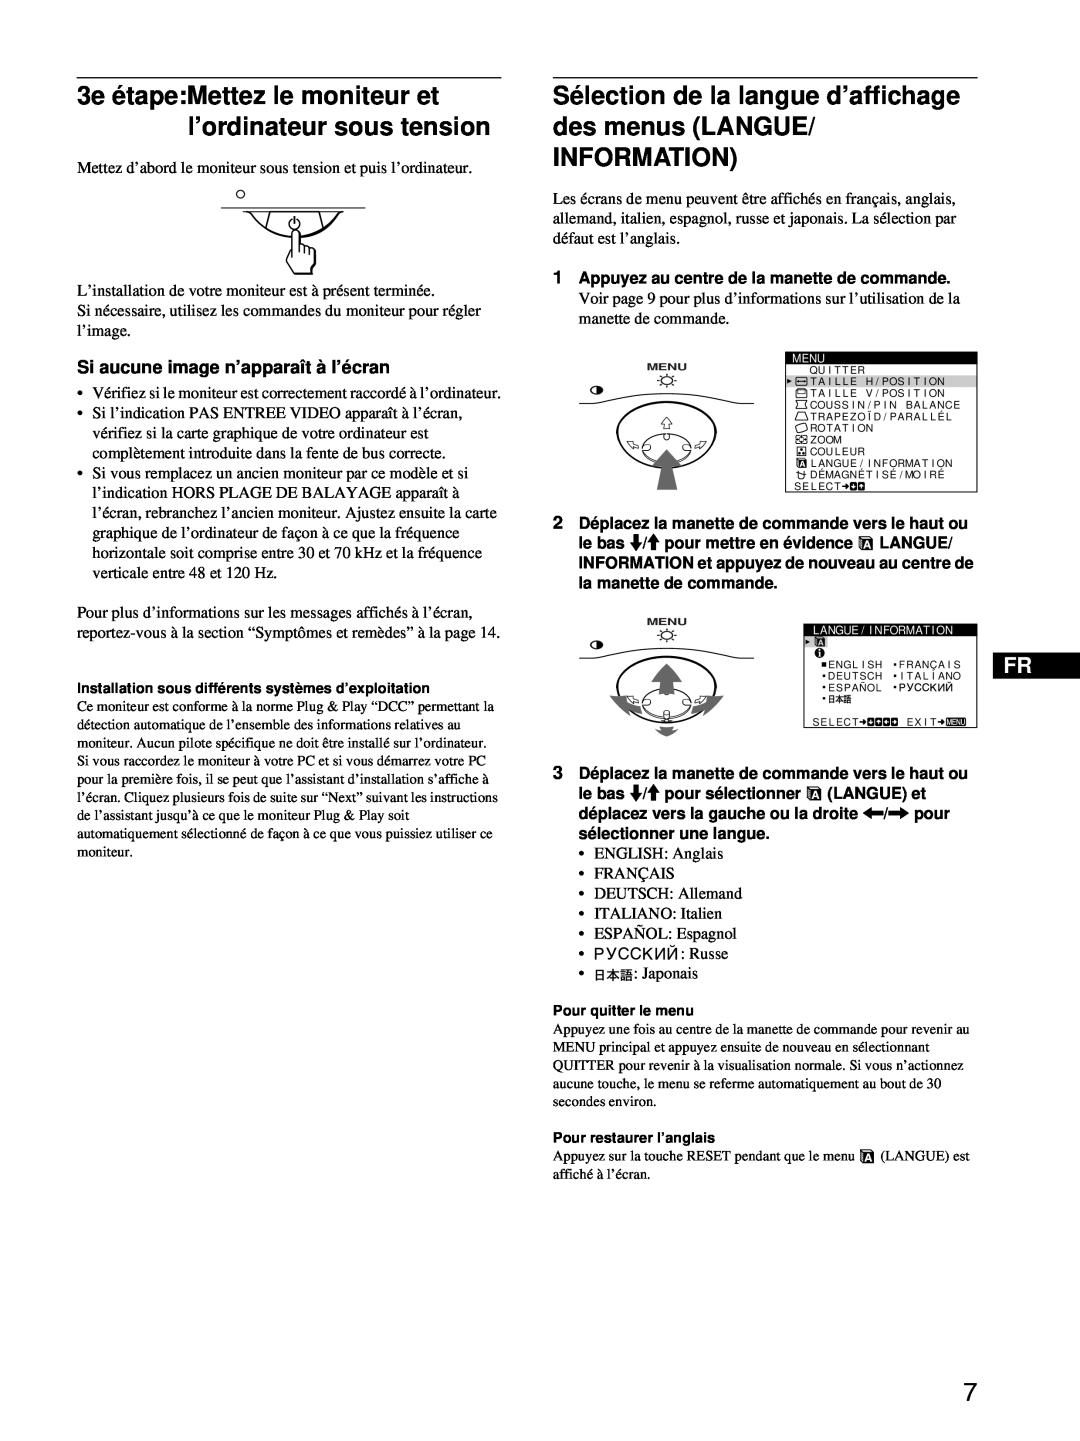 Sony CPD-E100 manual Sélection de la langue d’affichage des menus LANGUE INFORMATION, Si aucune image n’apparaît à l’écran 